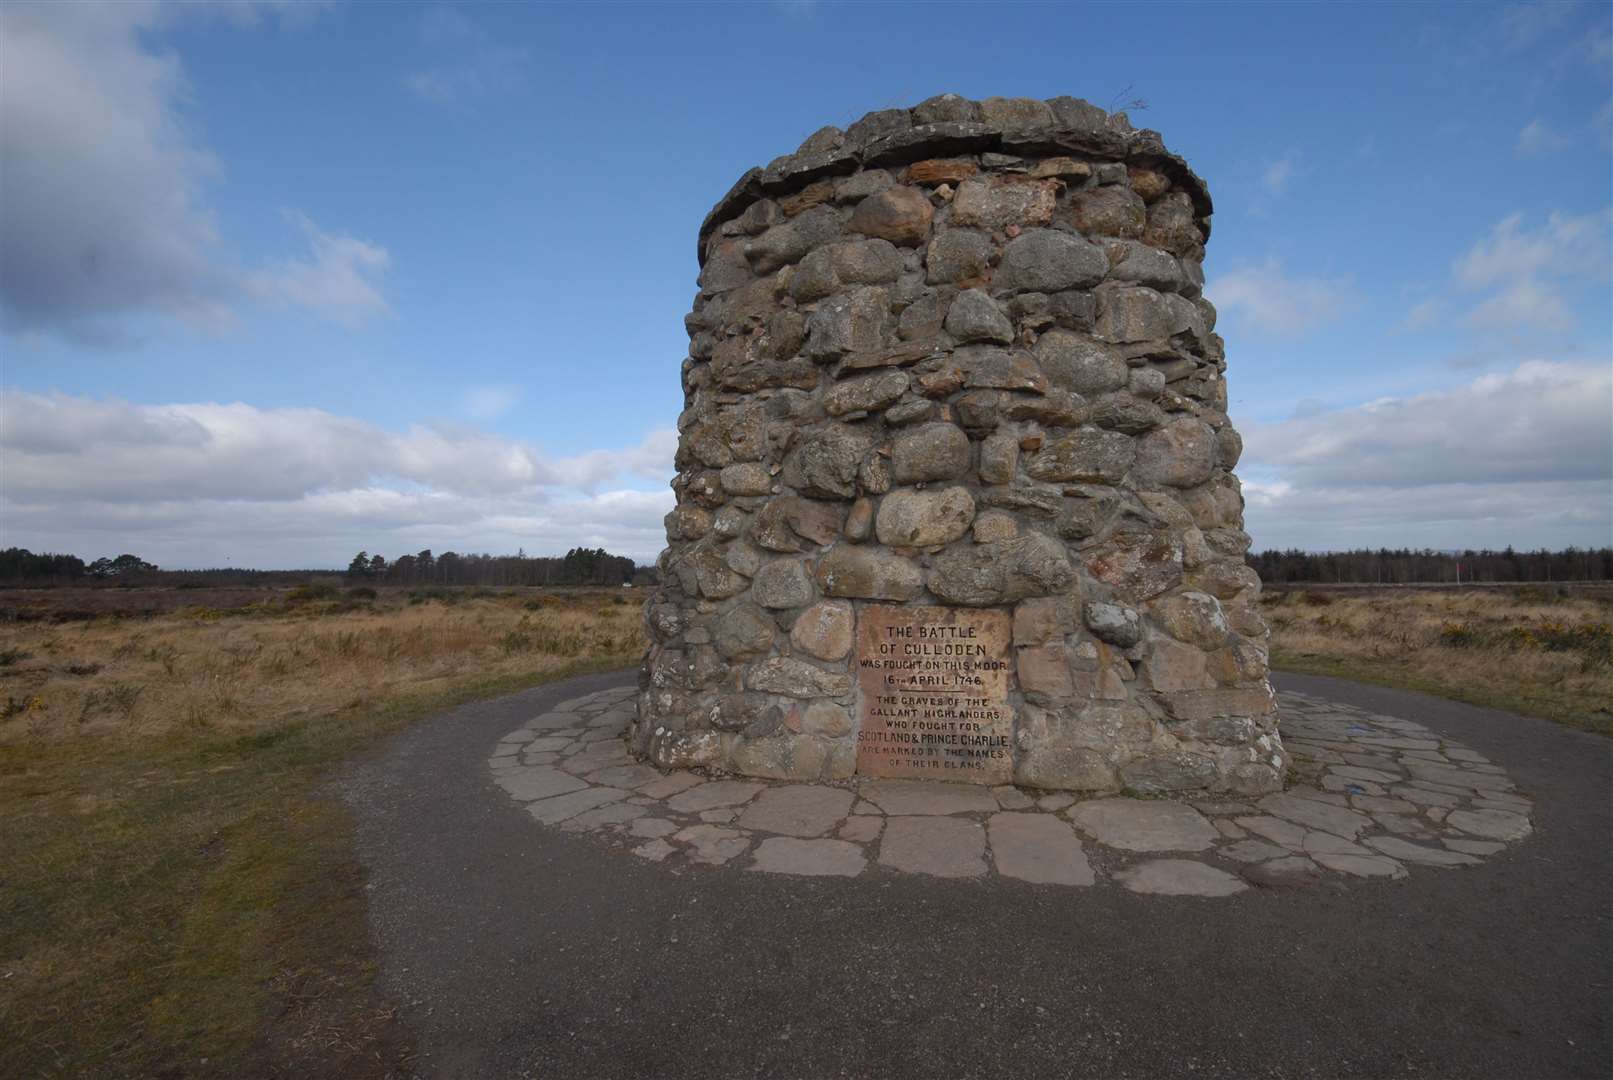 The memorial cairn at Culloden Battlefield.